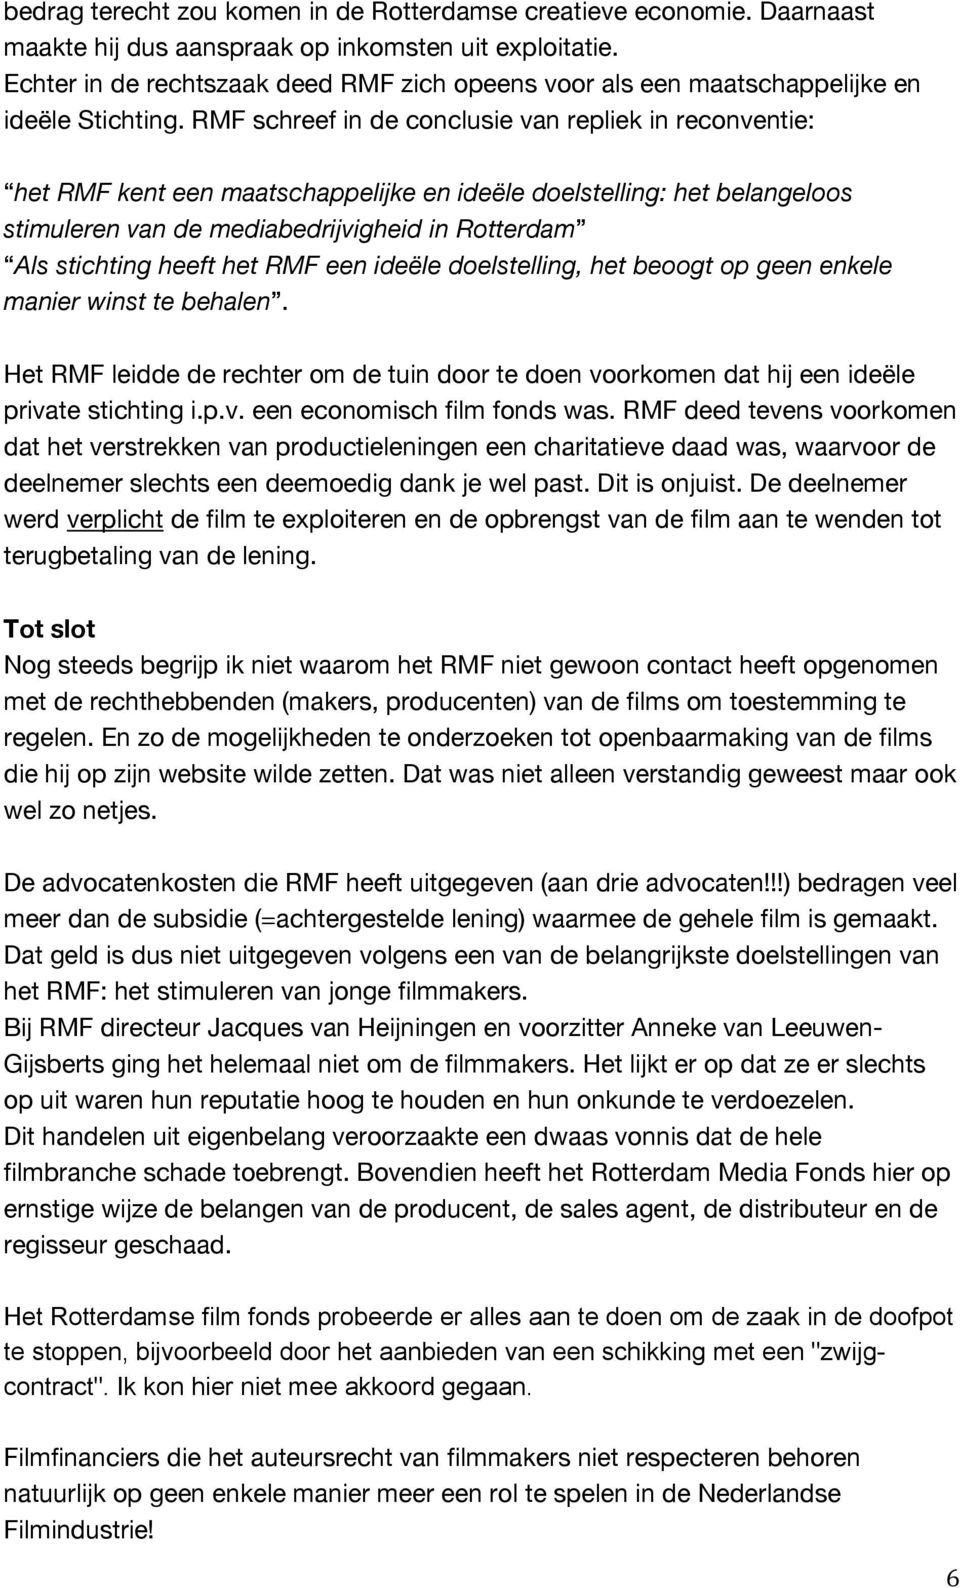 RMF schreef in de conclusie van repliek in reconventie: het RMF kent een maatschappelijke en ideële doelstelling: het belangeloos stimuleren van de mediabedrijvigheid in Rotterdam Als stichting heeft